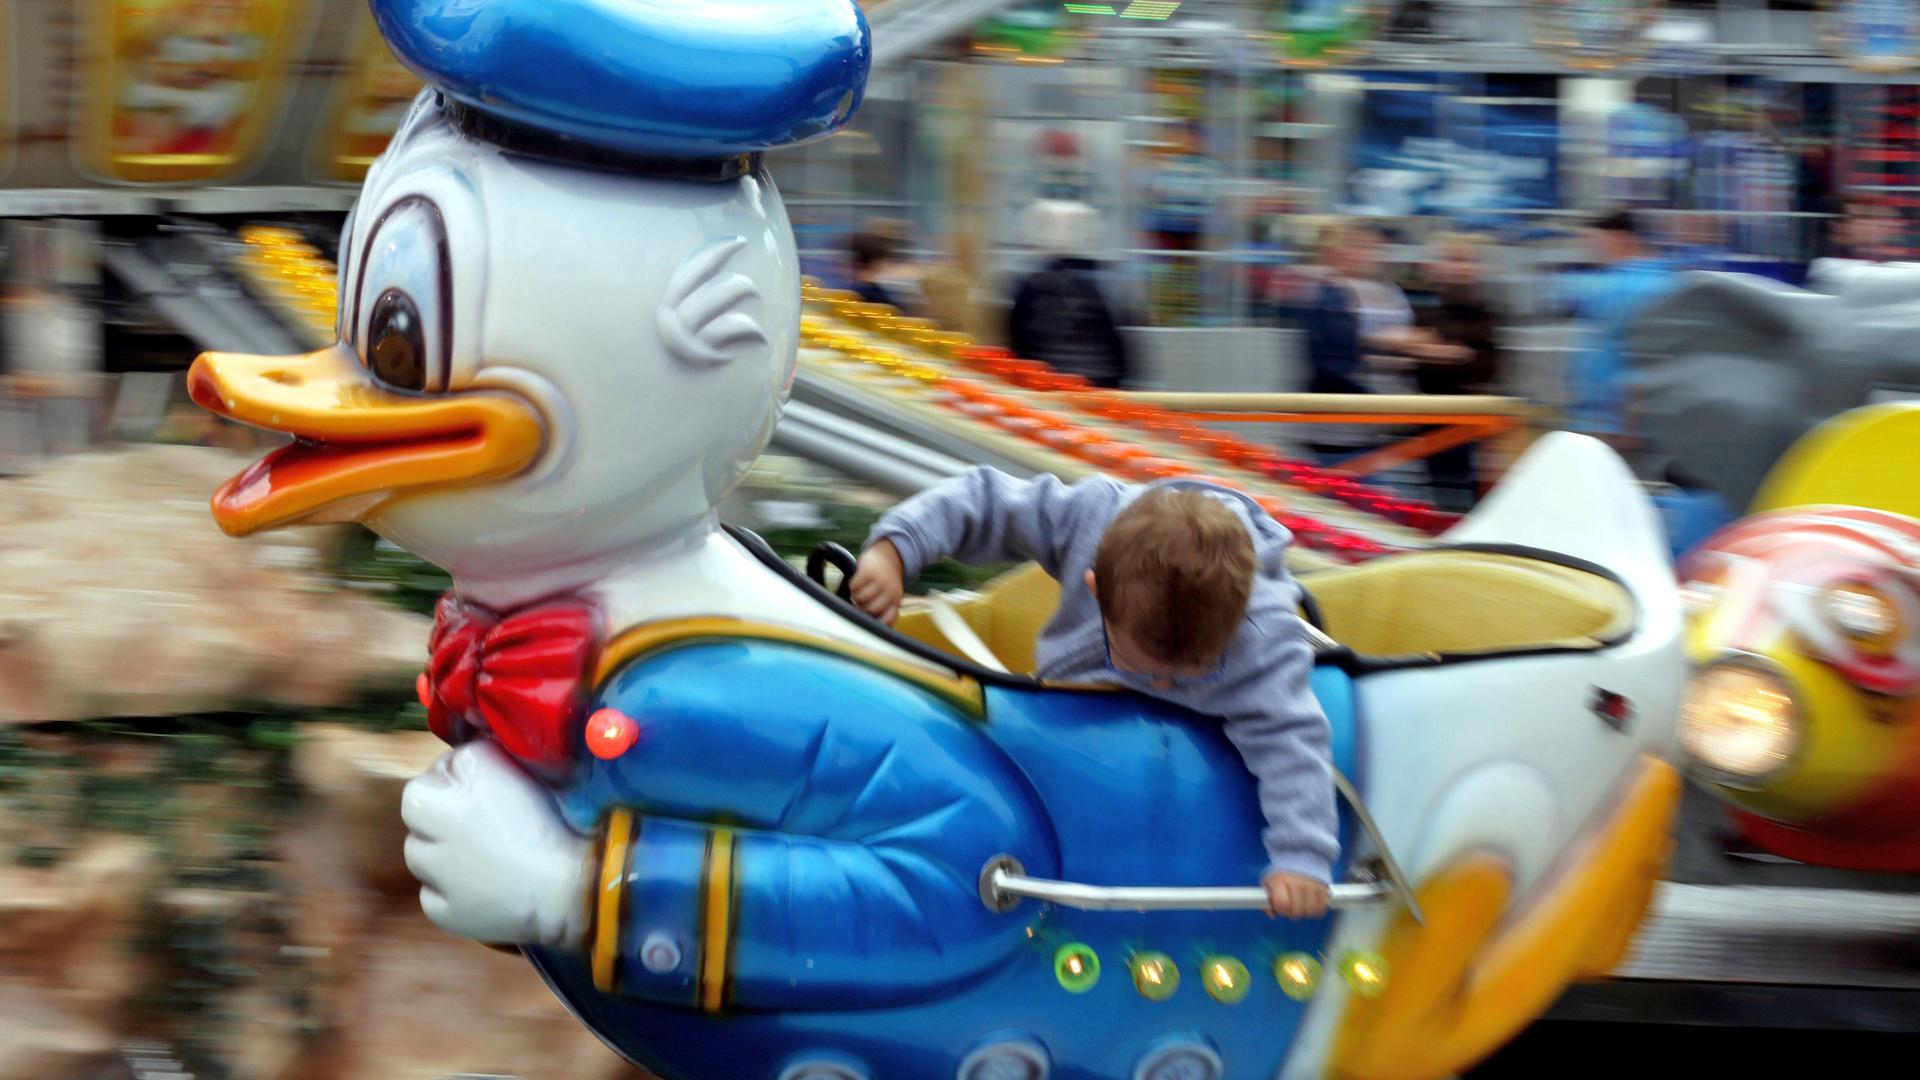 Kinderkarussell im Donald Duck Motiv mit einem Kind darin.